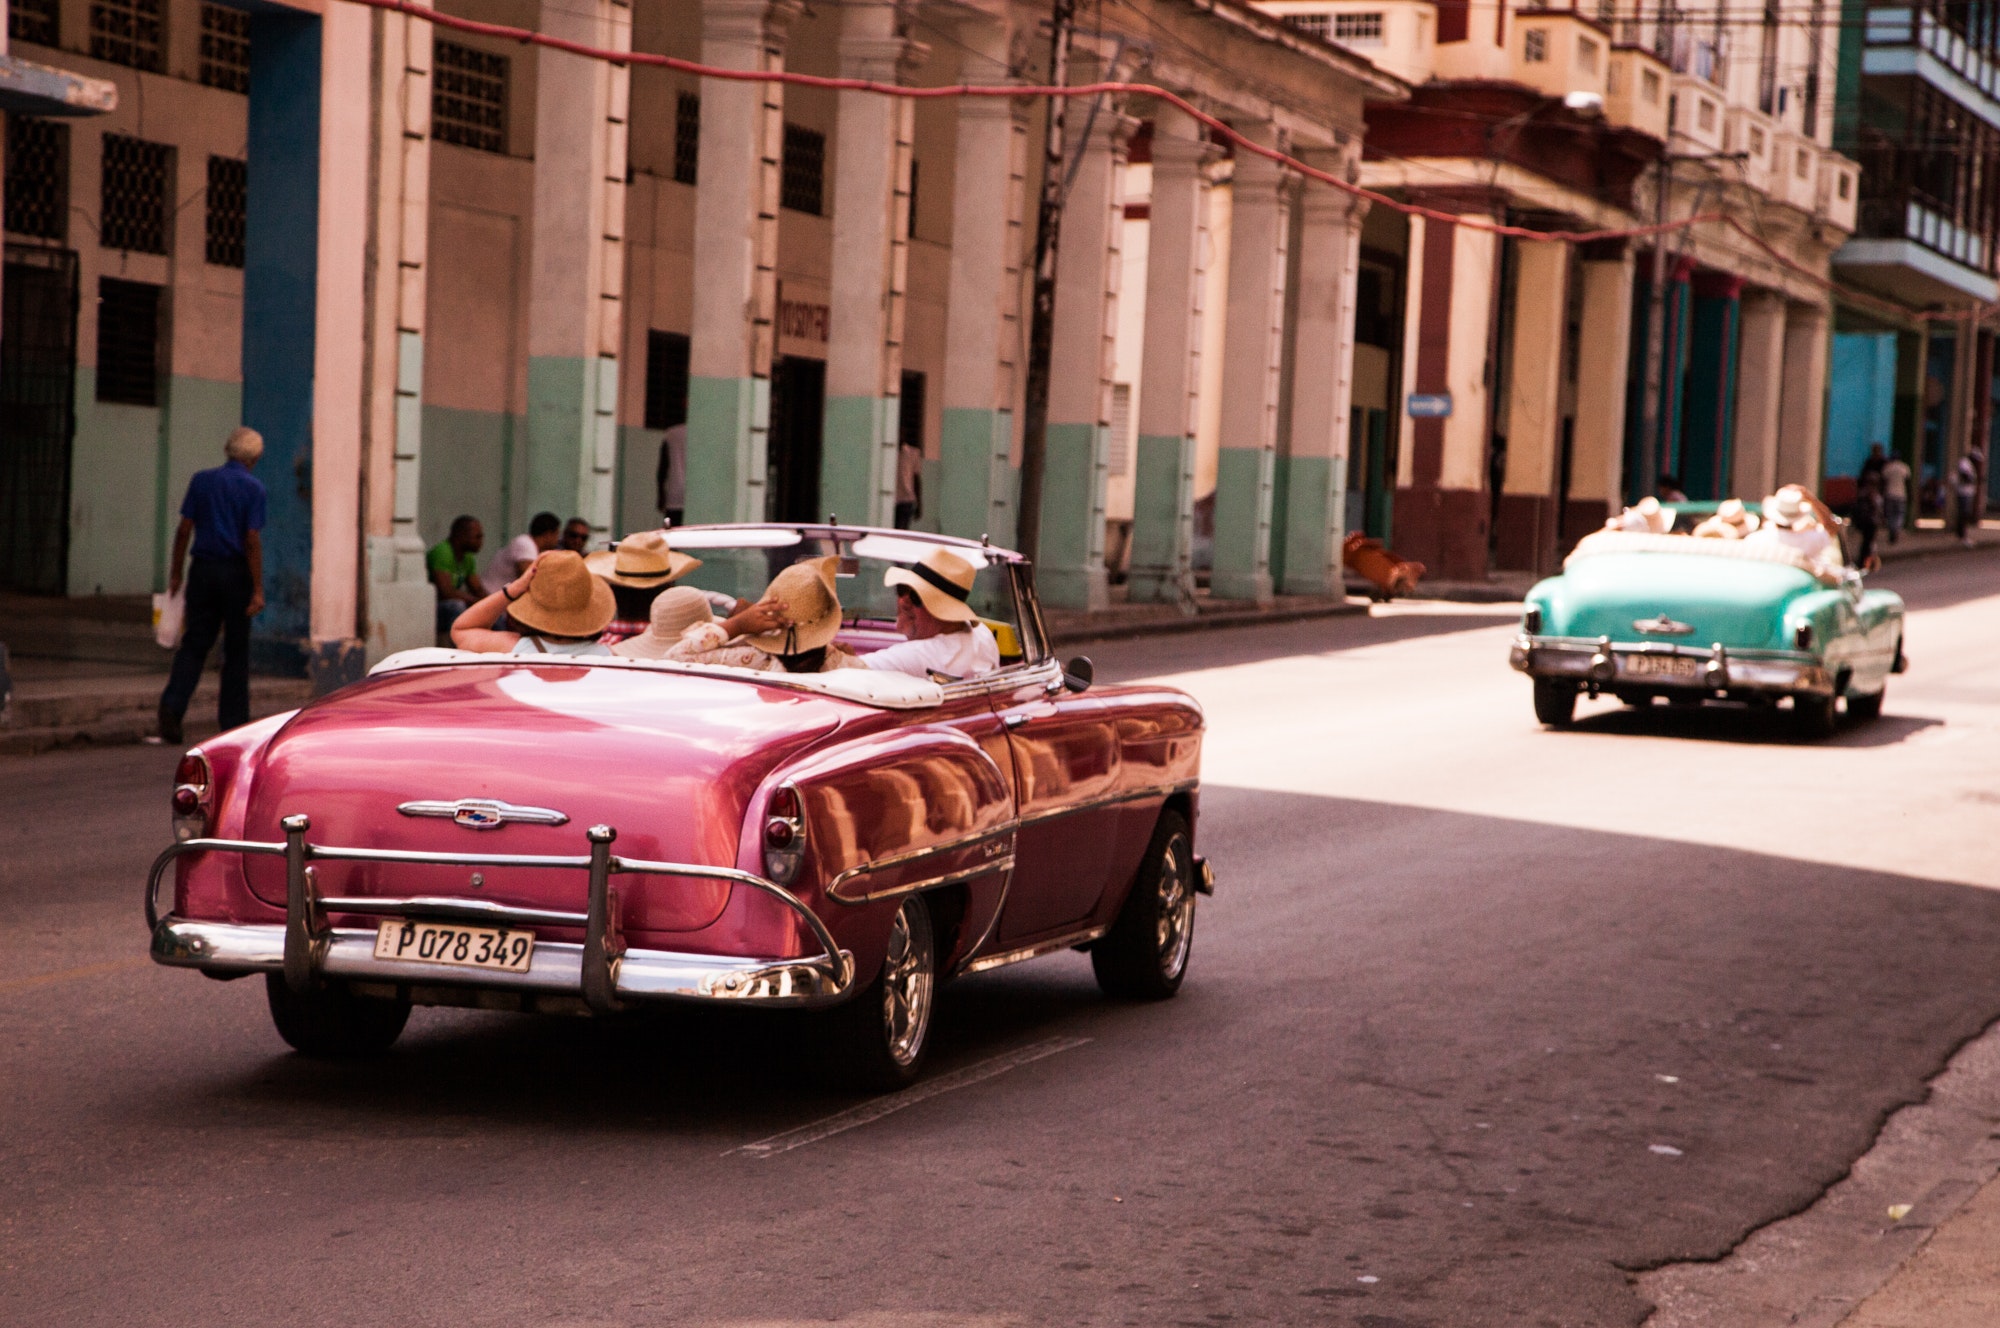 1000+ Beautiful Vintage Car Photos · Pexels · Free Stock Photos